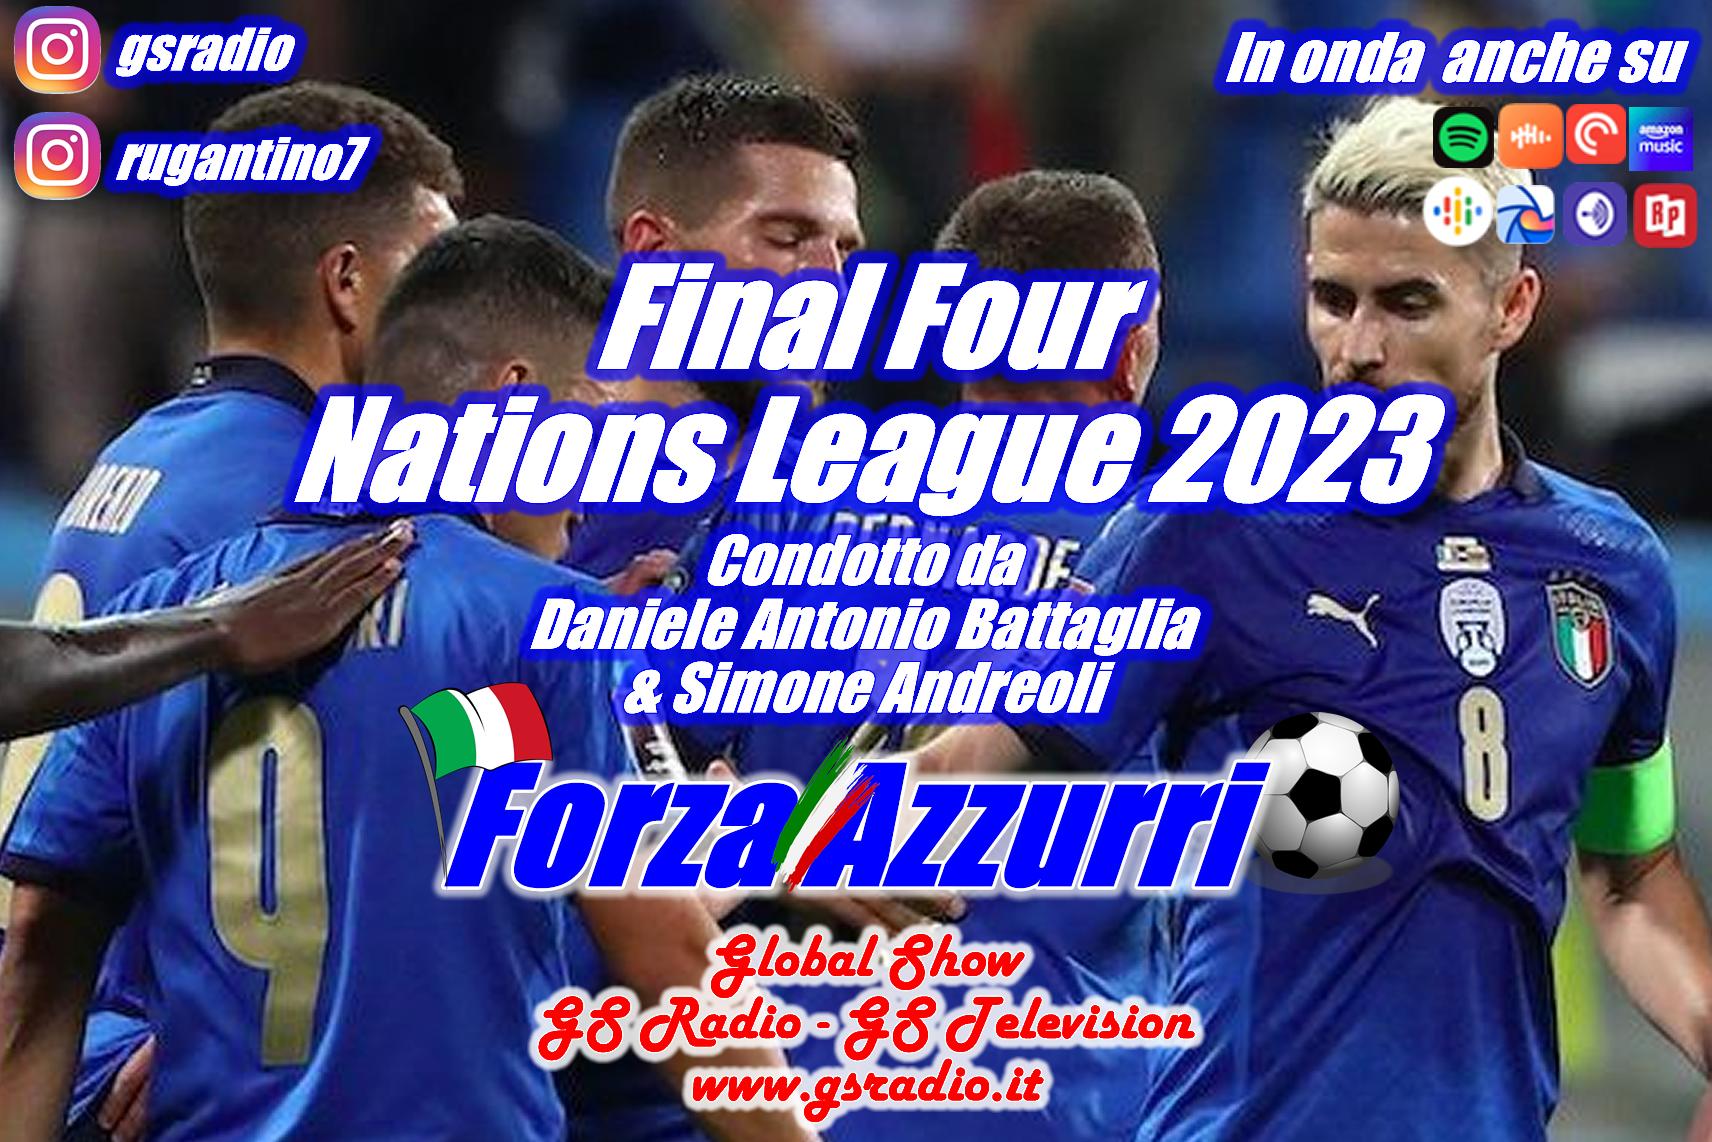 2- Final Four Nations League 2023